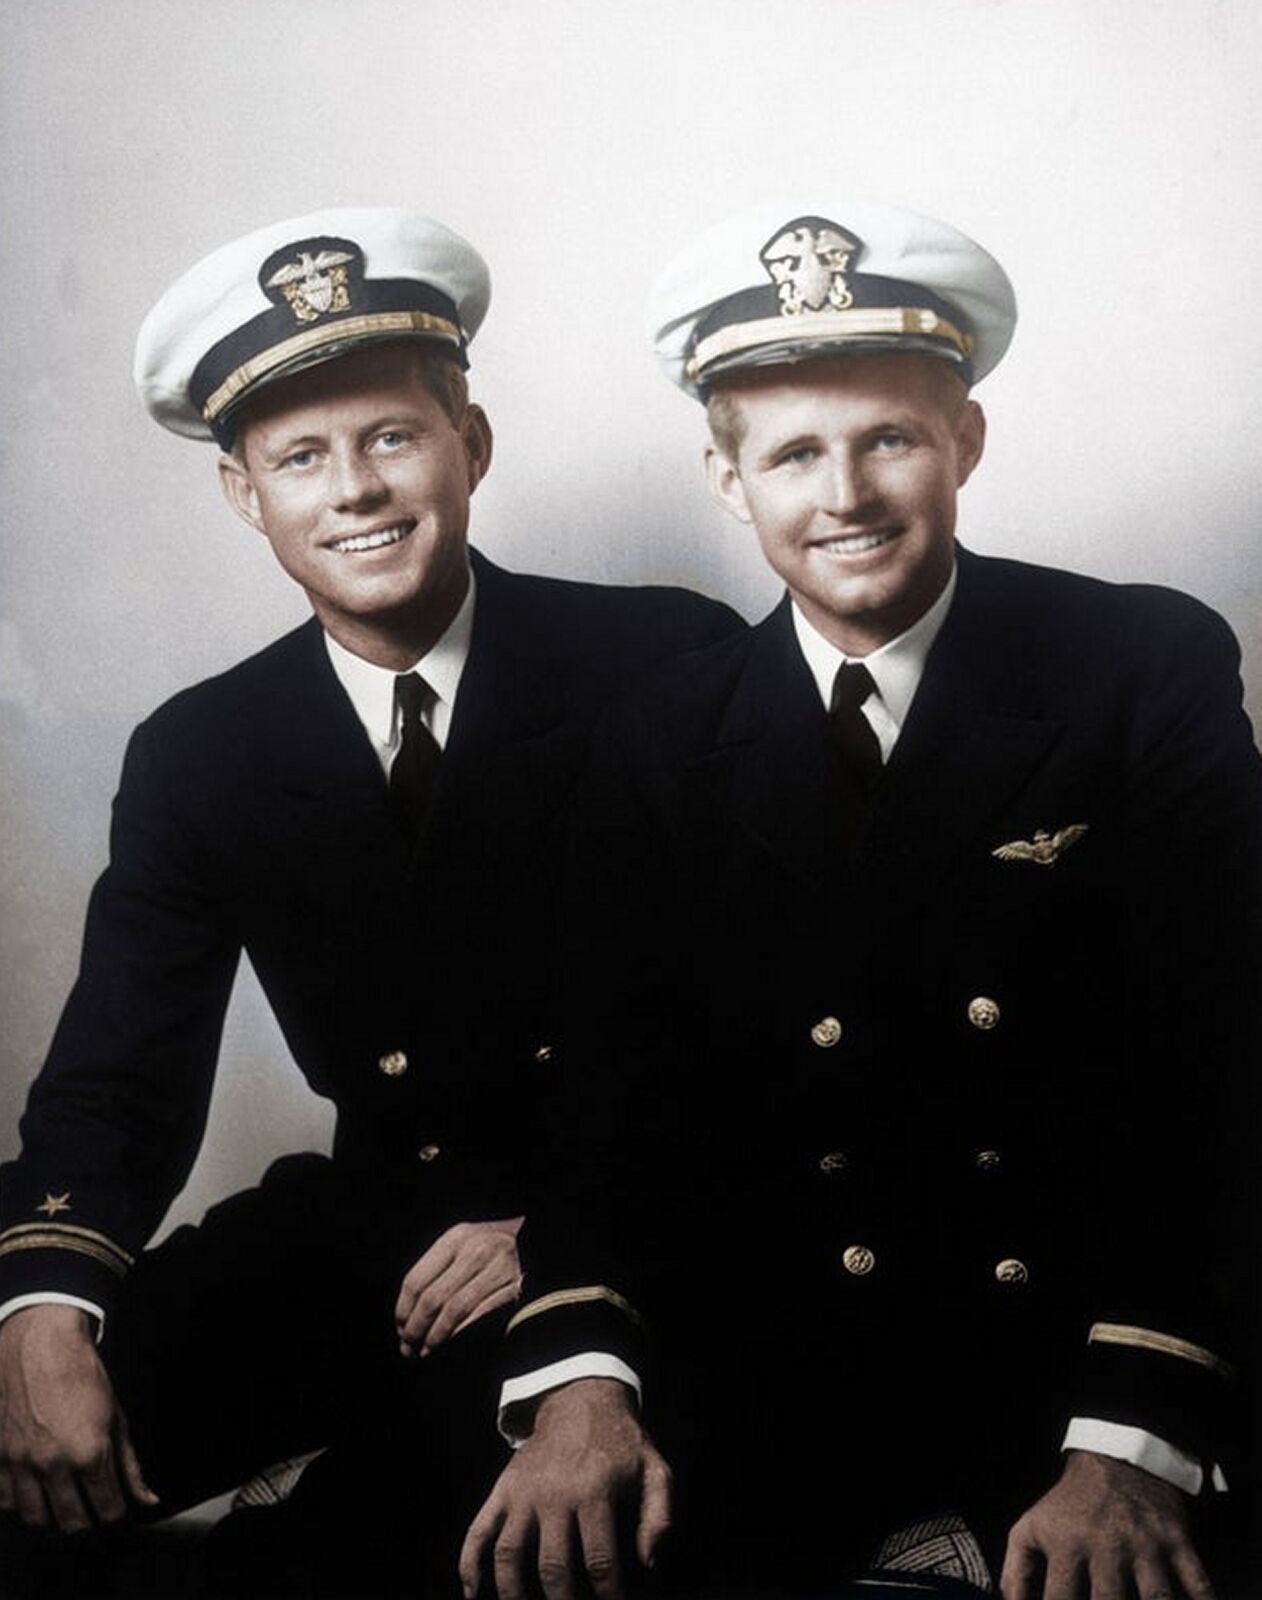 1942 JOHN F & JOSEPH KENNEDY US Navy PHOTO  (203-E)